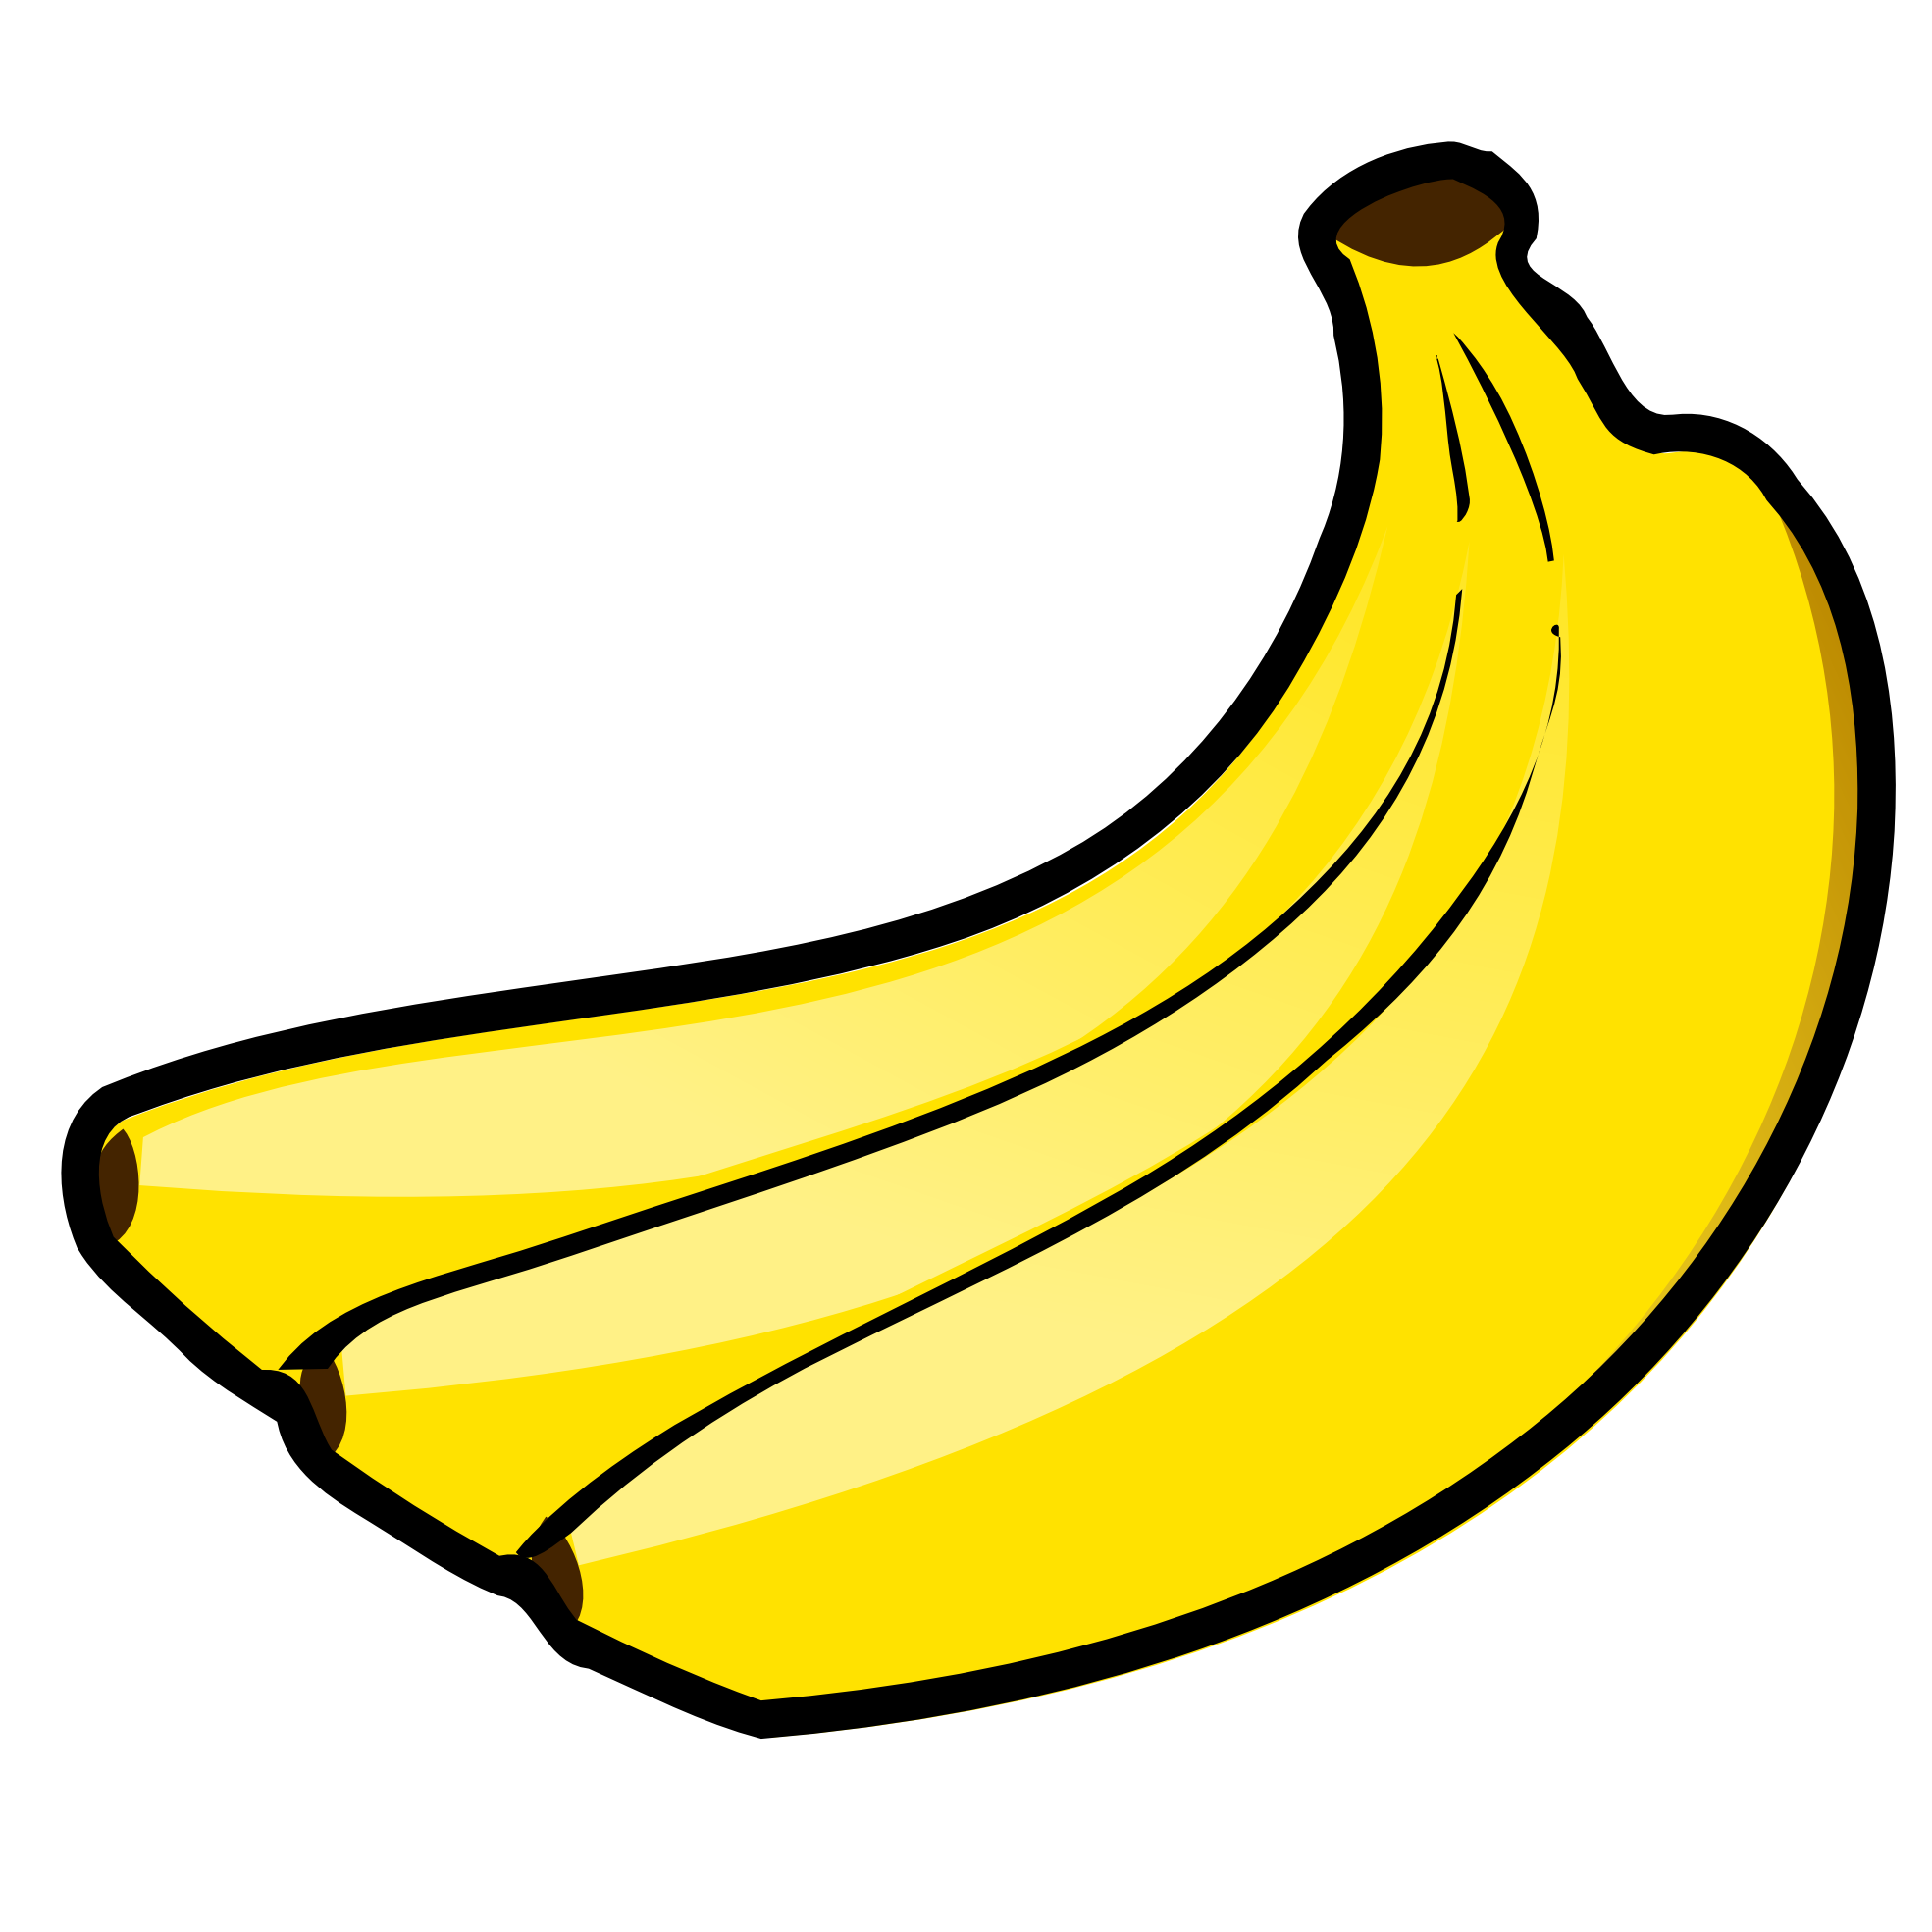 banana-family # 82064